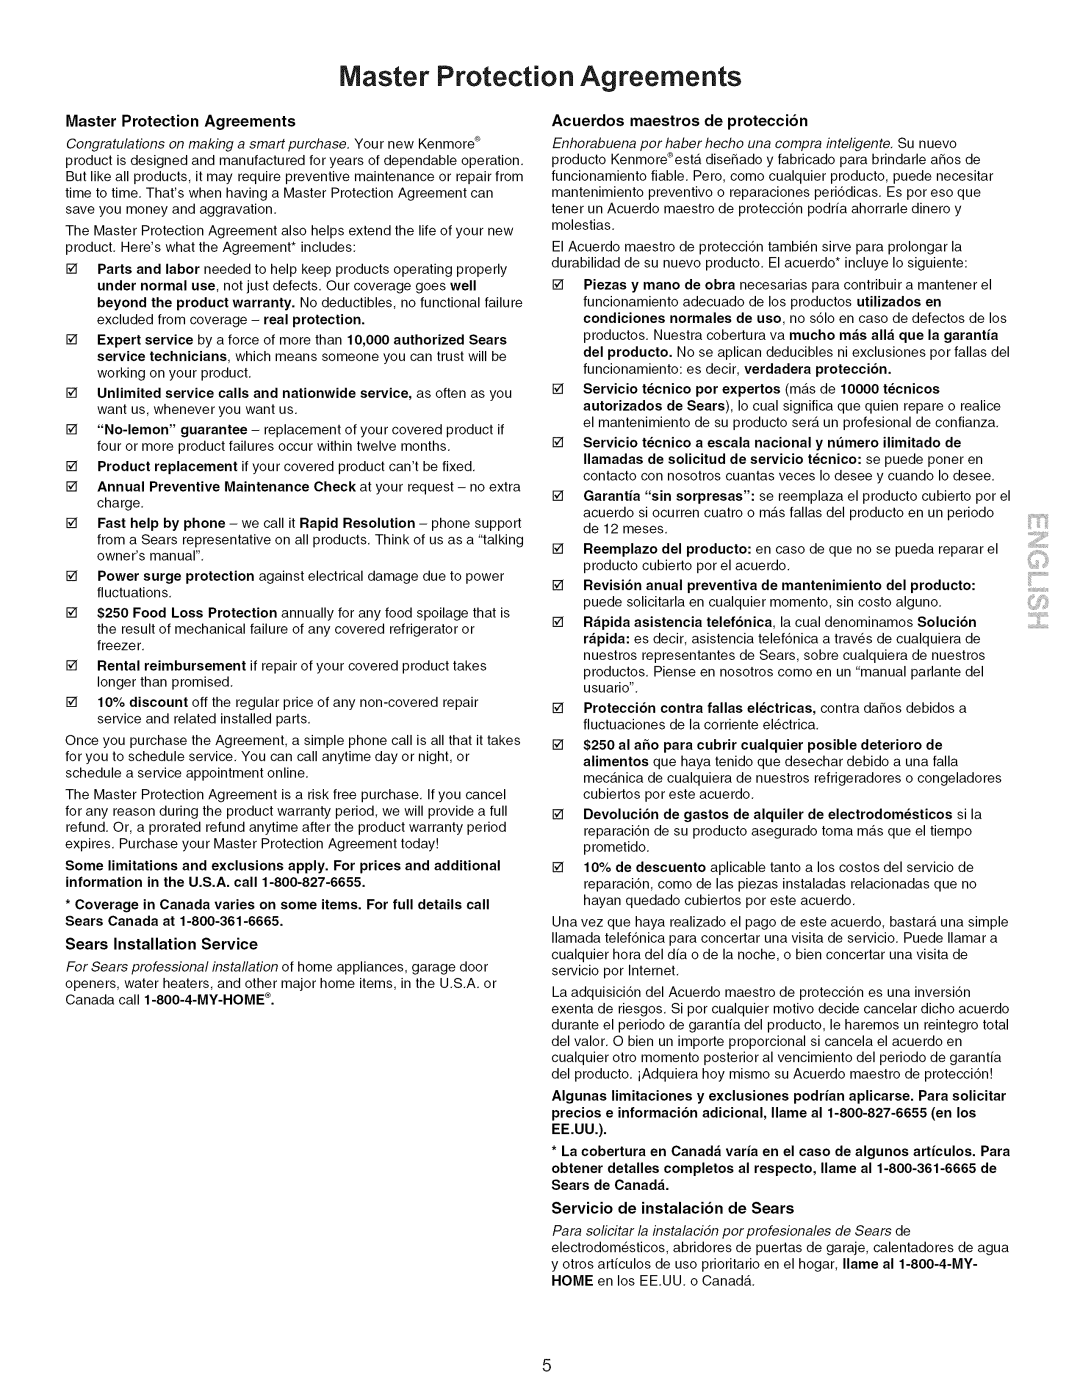 Kenmore 790.9662 manual Master Protection Agreements, Maintenance, Acuerdos maestros de proteccion 